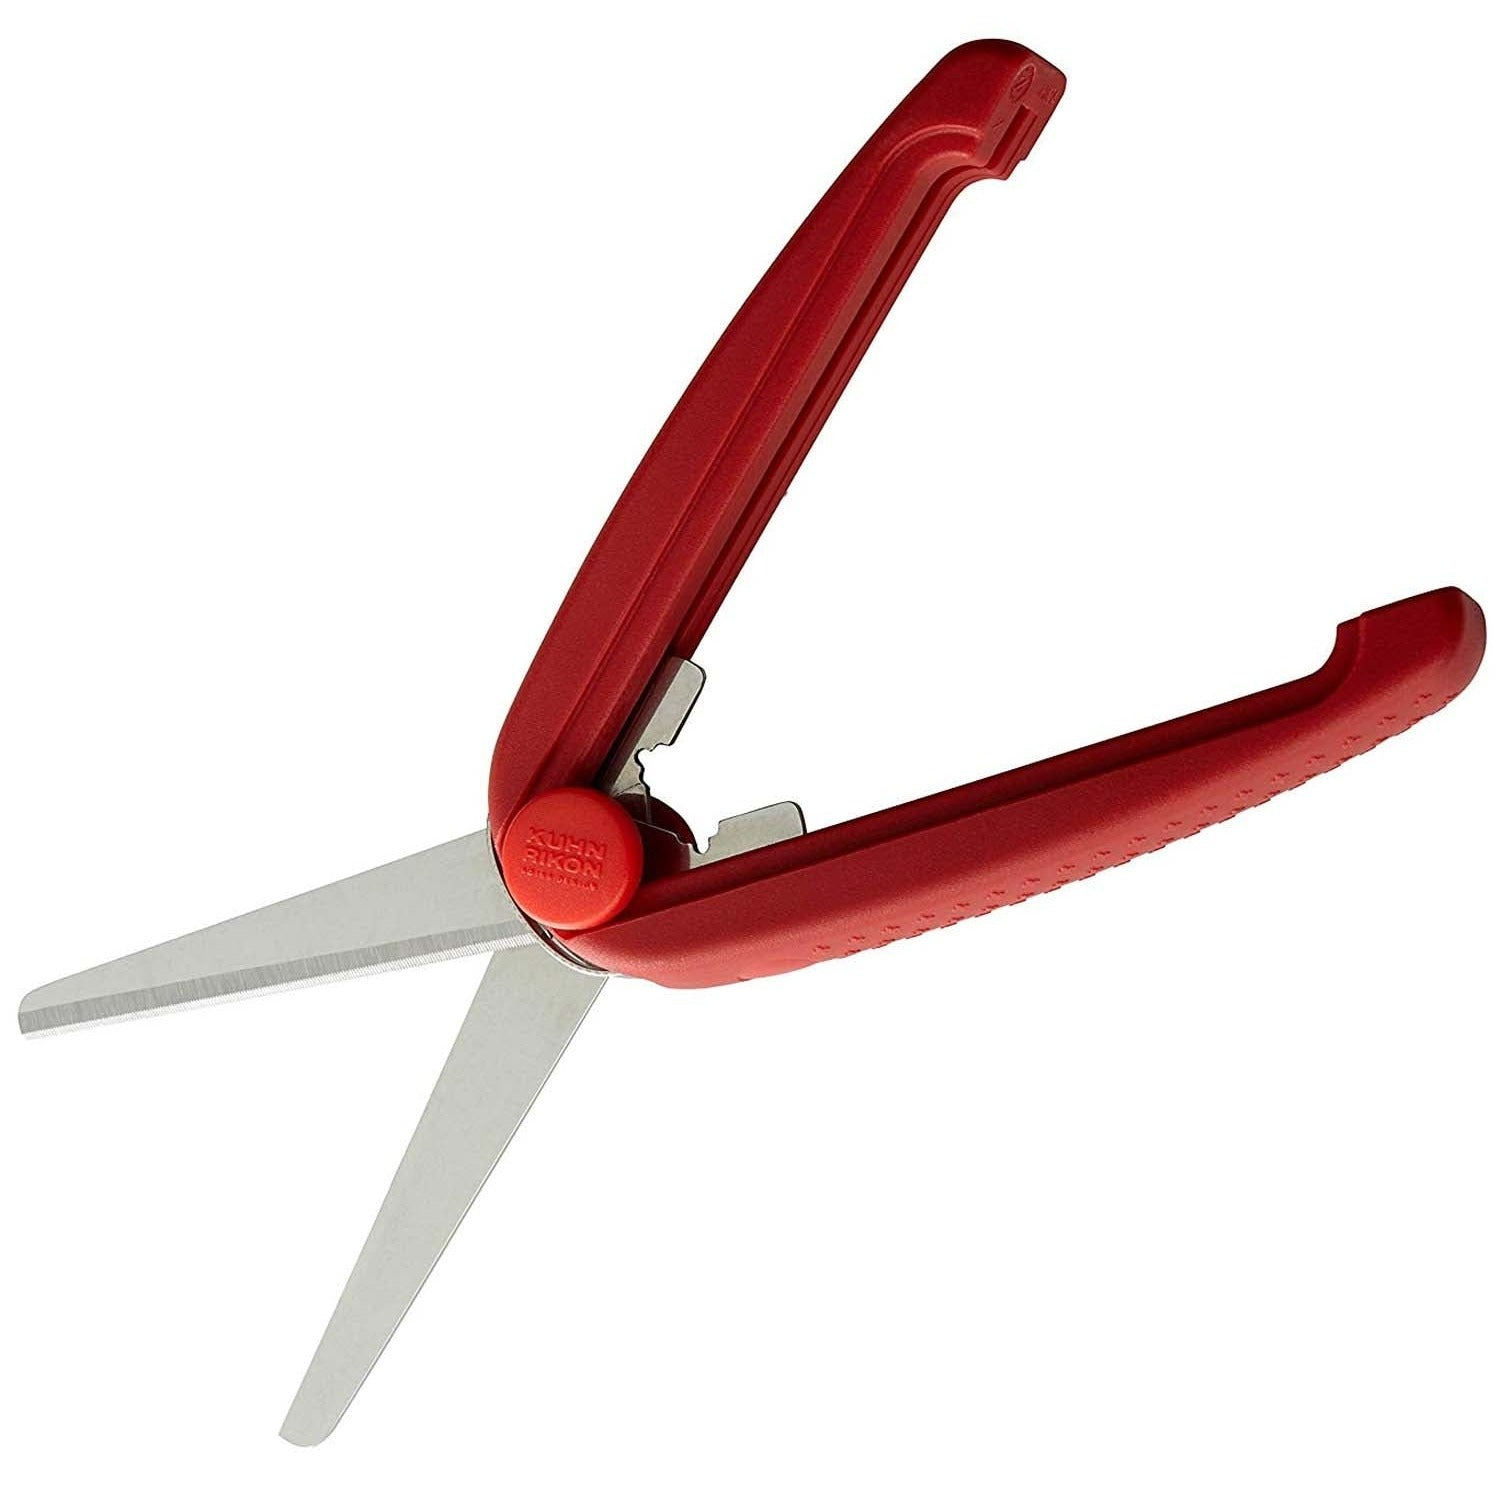 Kuhn Rikon Multi-Tool Shears - Red